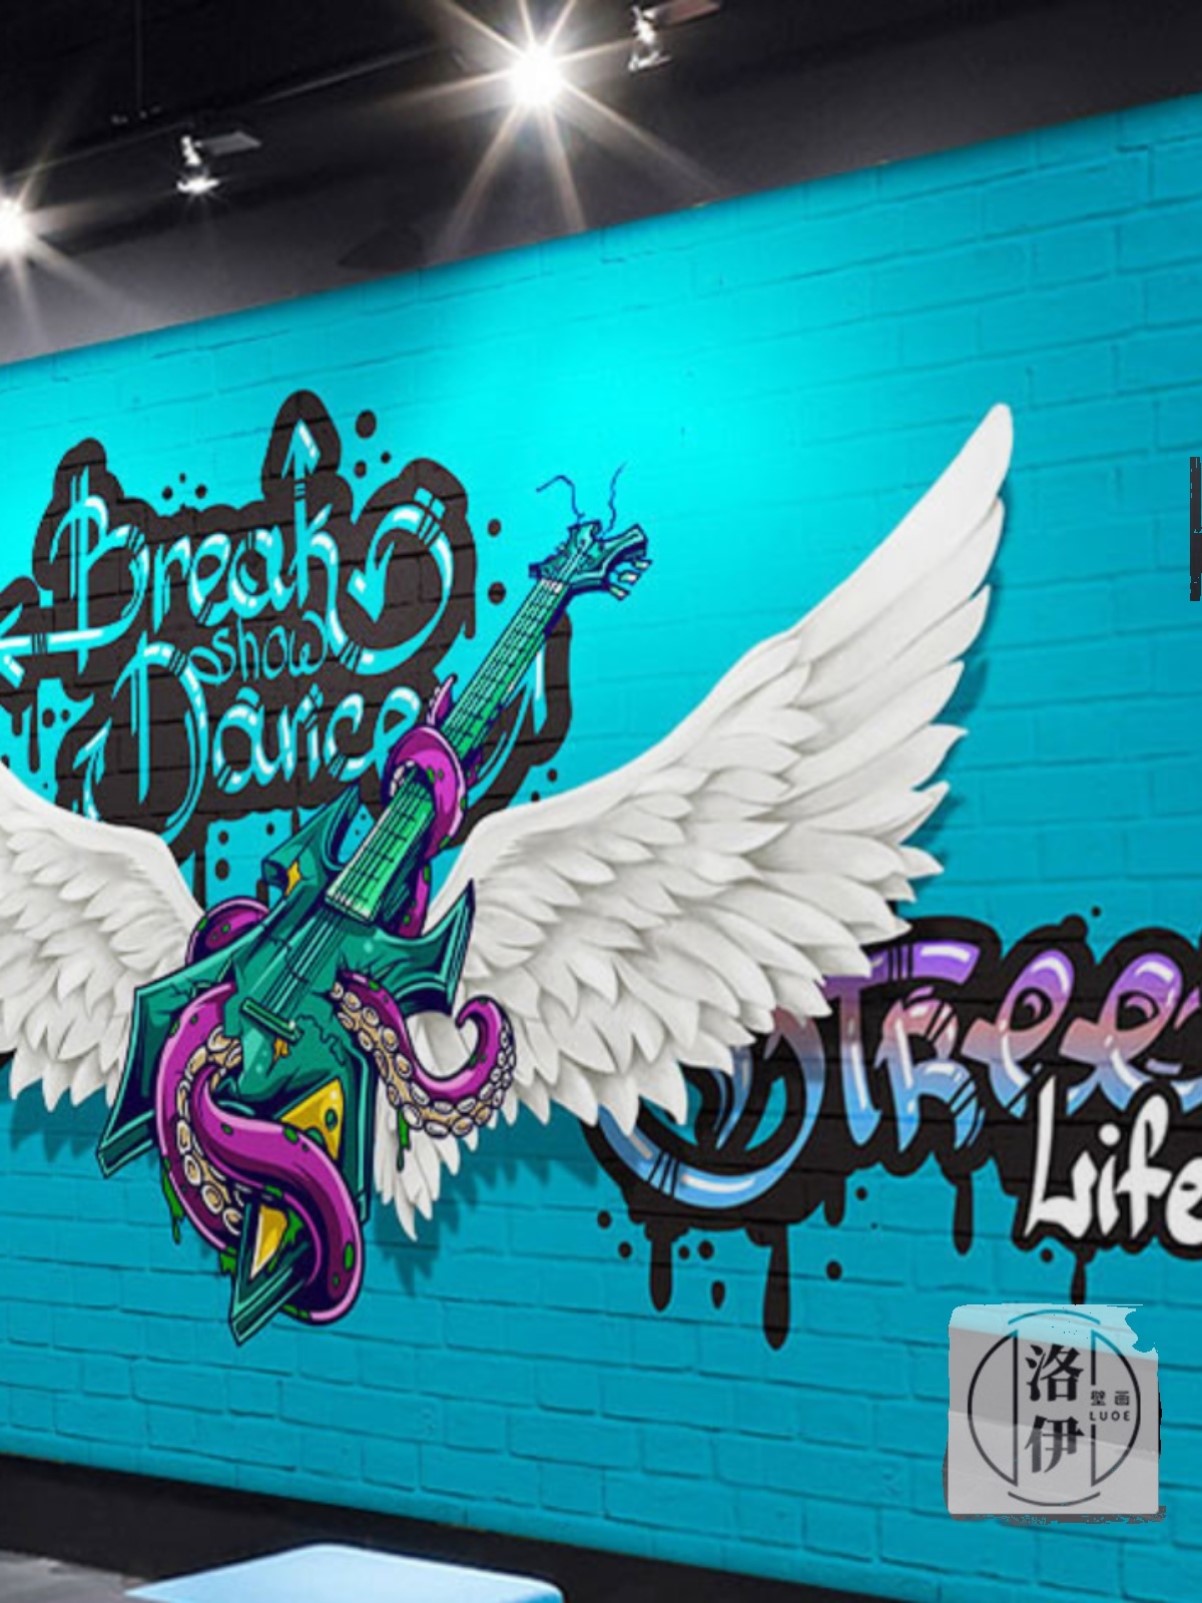 涂鸦摇滚音乐翅膀壁纸舞台吉他教室壁画舞蹈房嘻哈街舞室背景墙纸